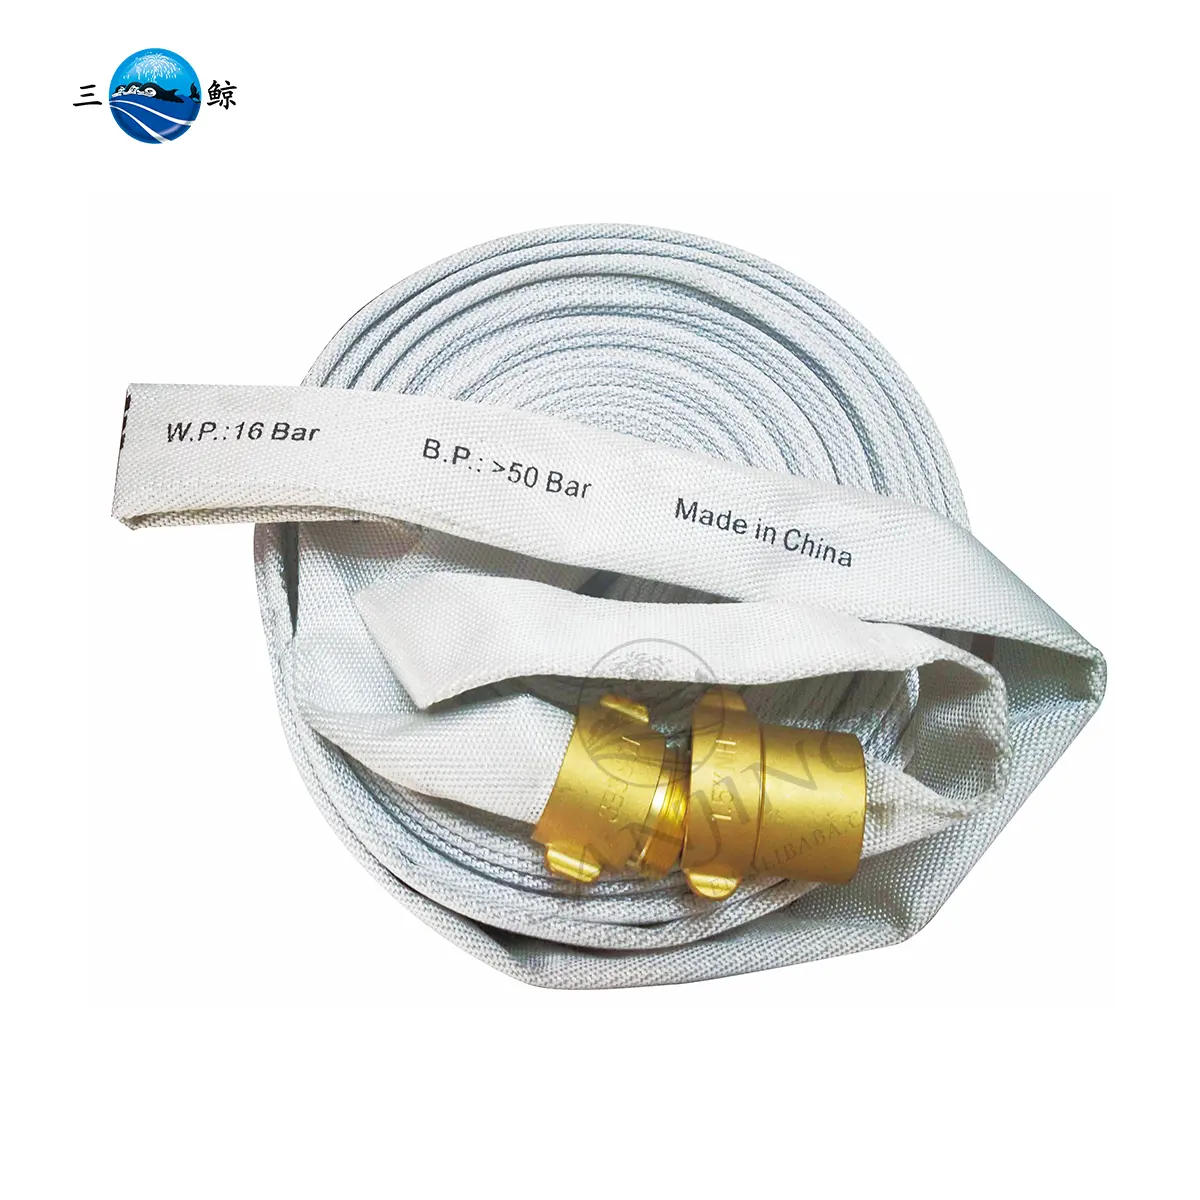 Nhà máy bán 1 1/2 "10BAR chữa cháy Hose với nh khớp nối PVC lót ống Hose giá